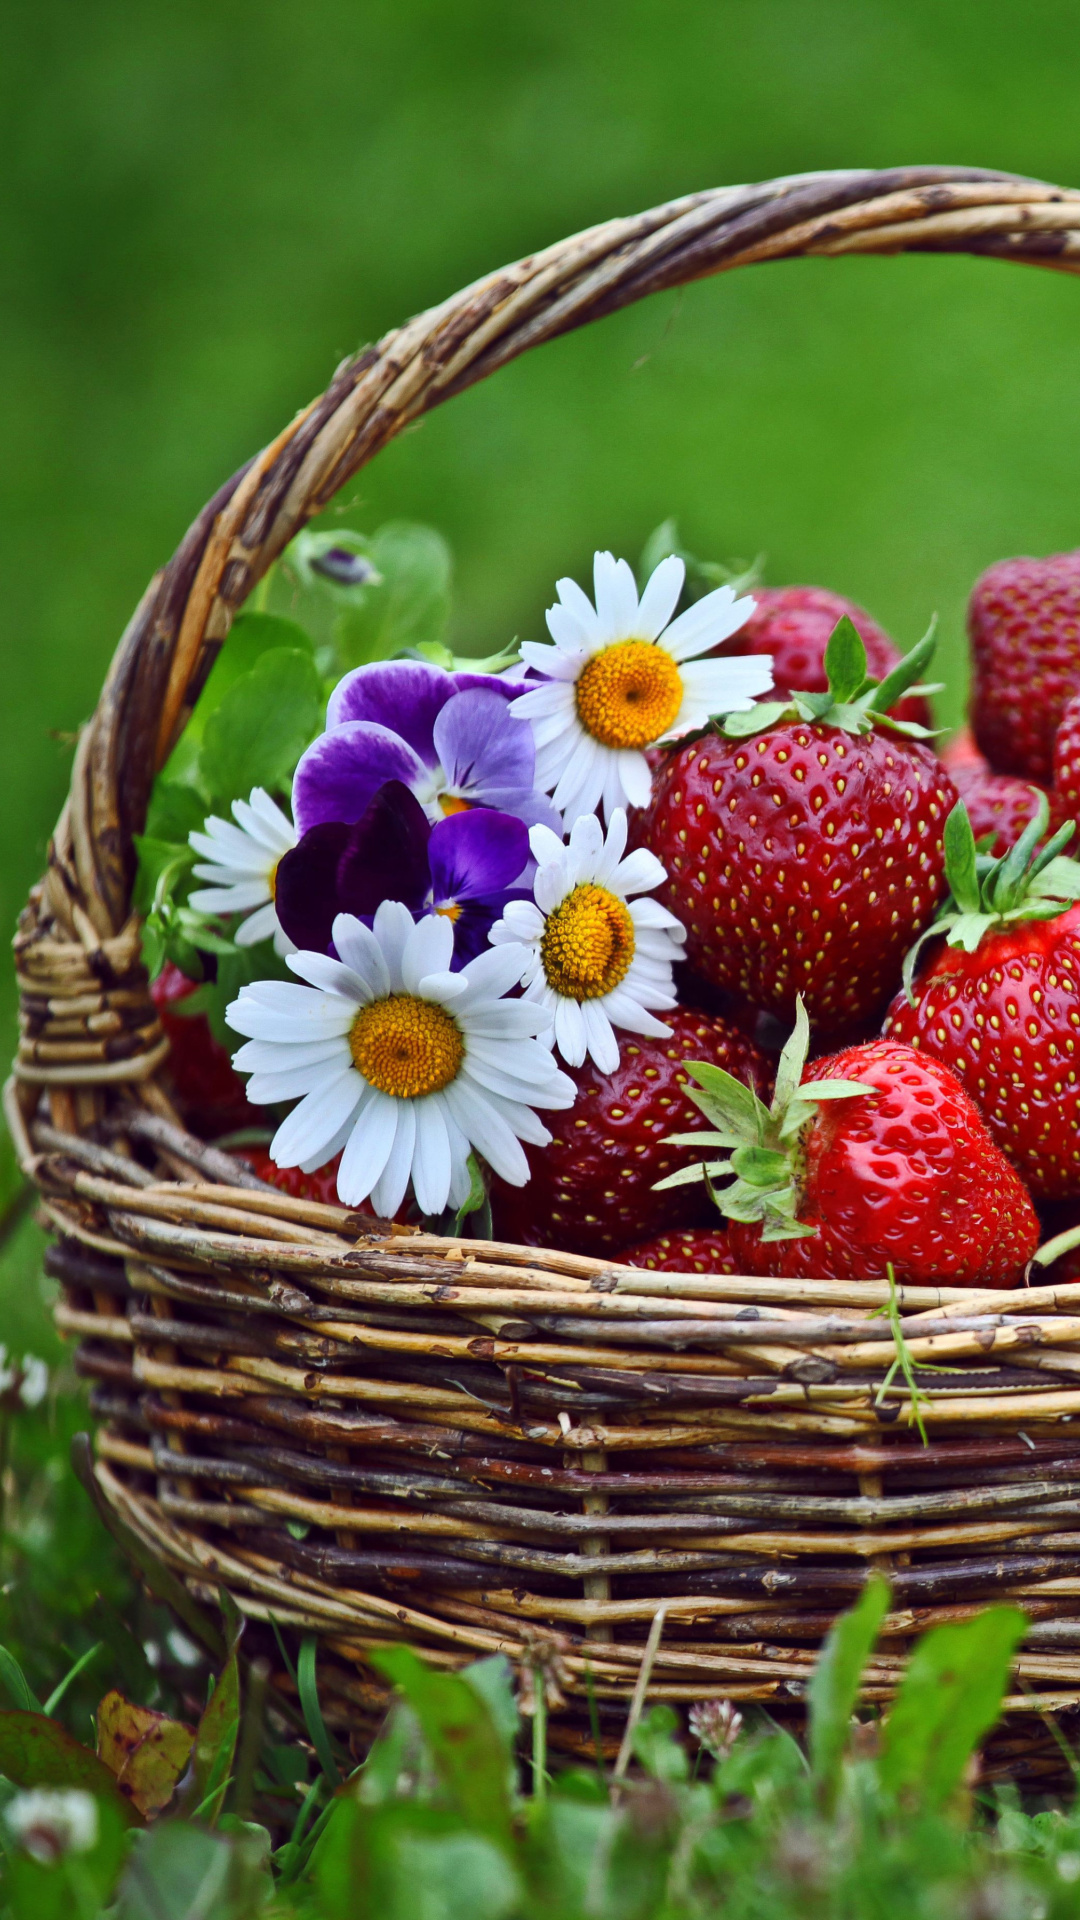 Обои Strawberries in Baskets 1080x1920